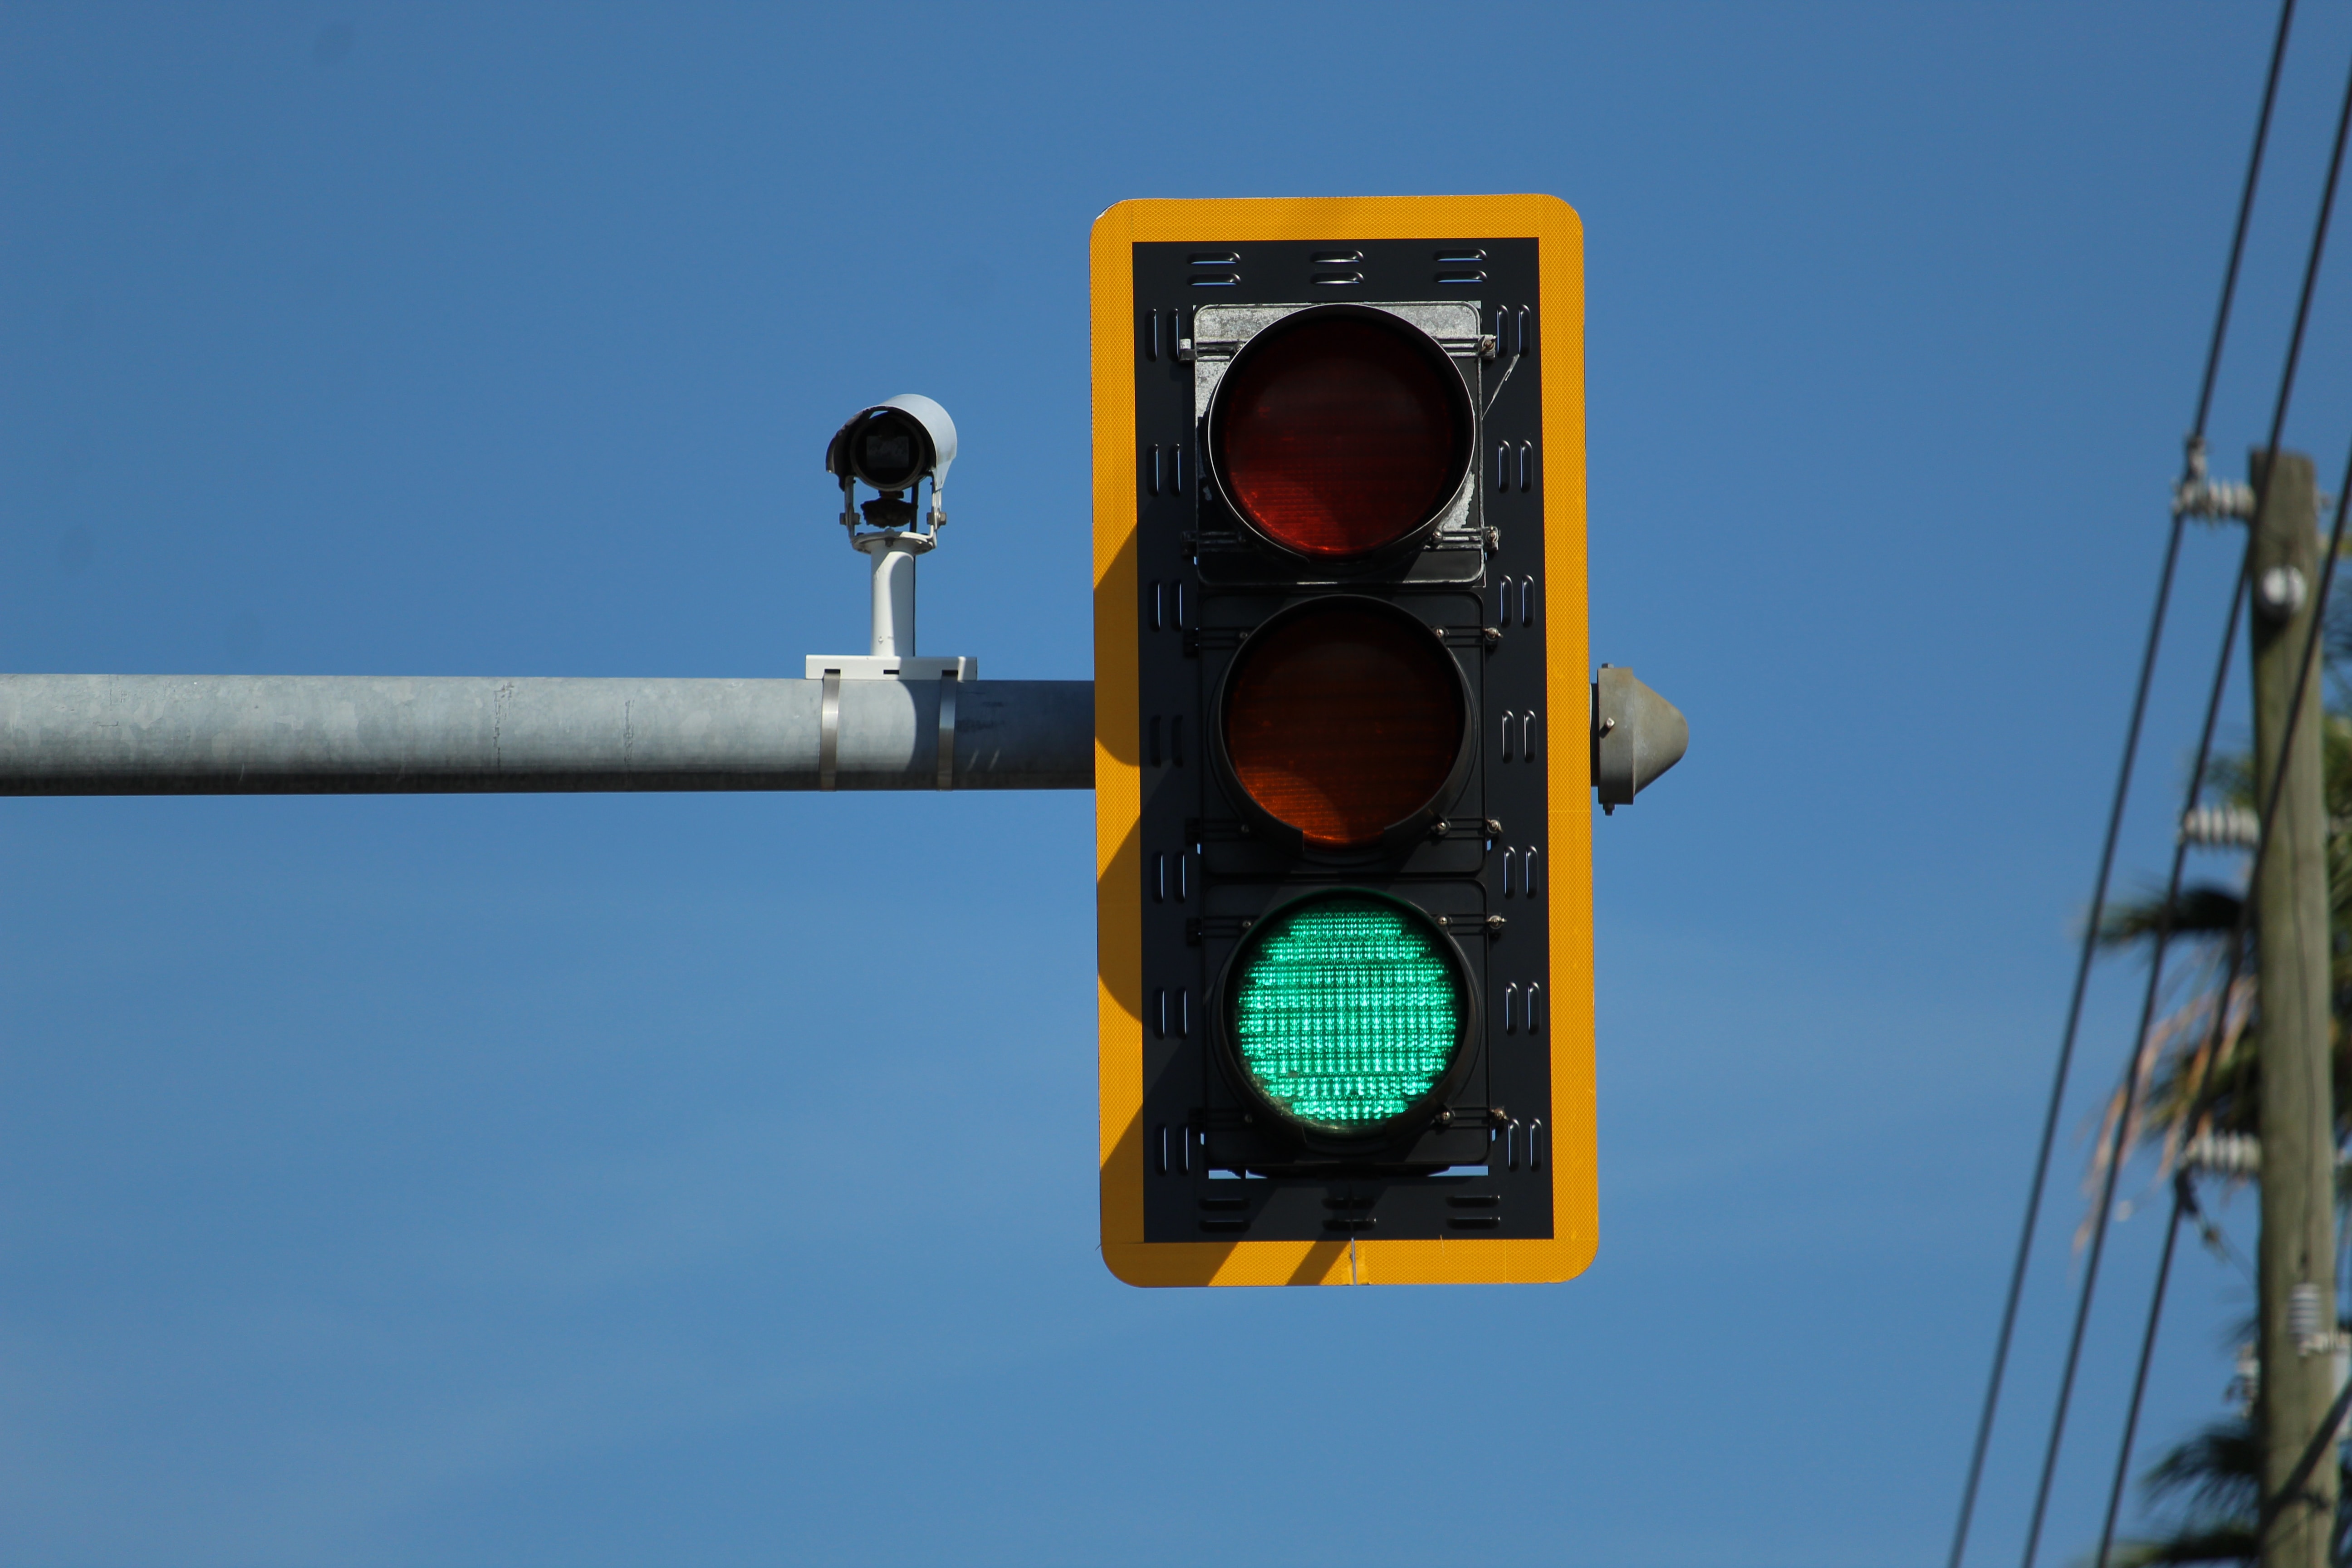 El programa de optimización de semáforos asistido por IA de Google ya funciona en decenas de ciudades